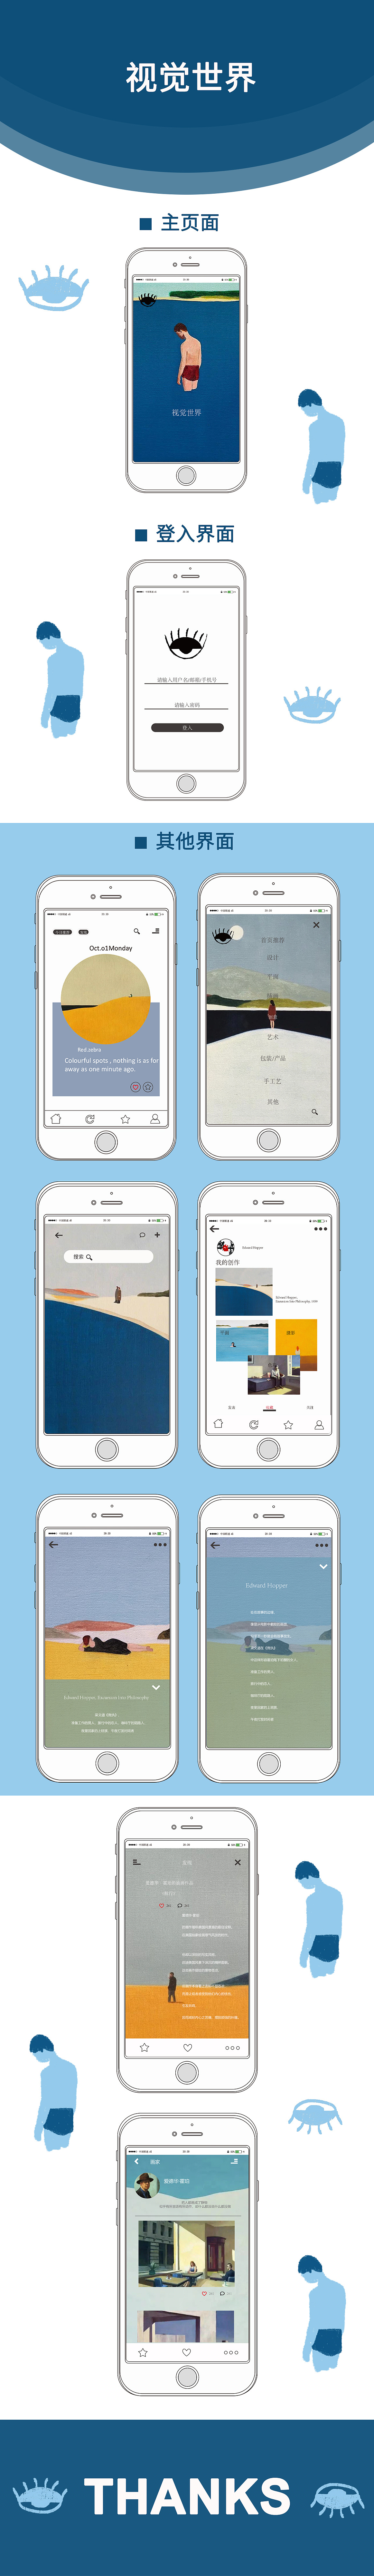 视觉世界—设计类手机app界面设计